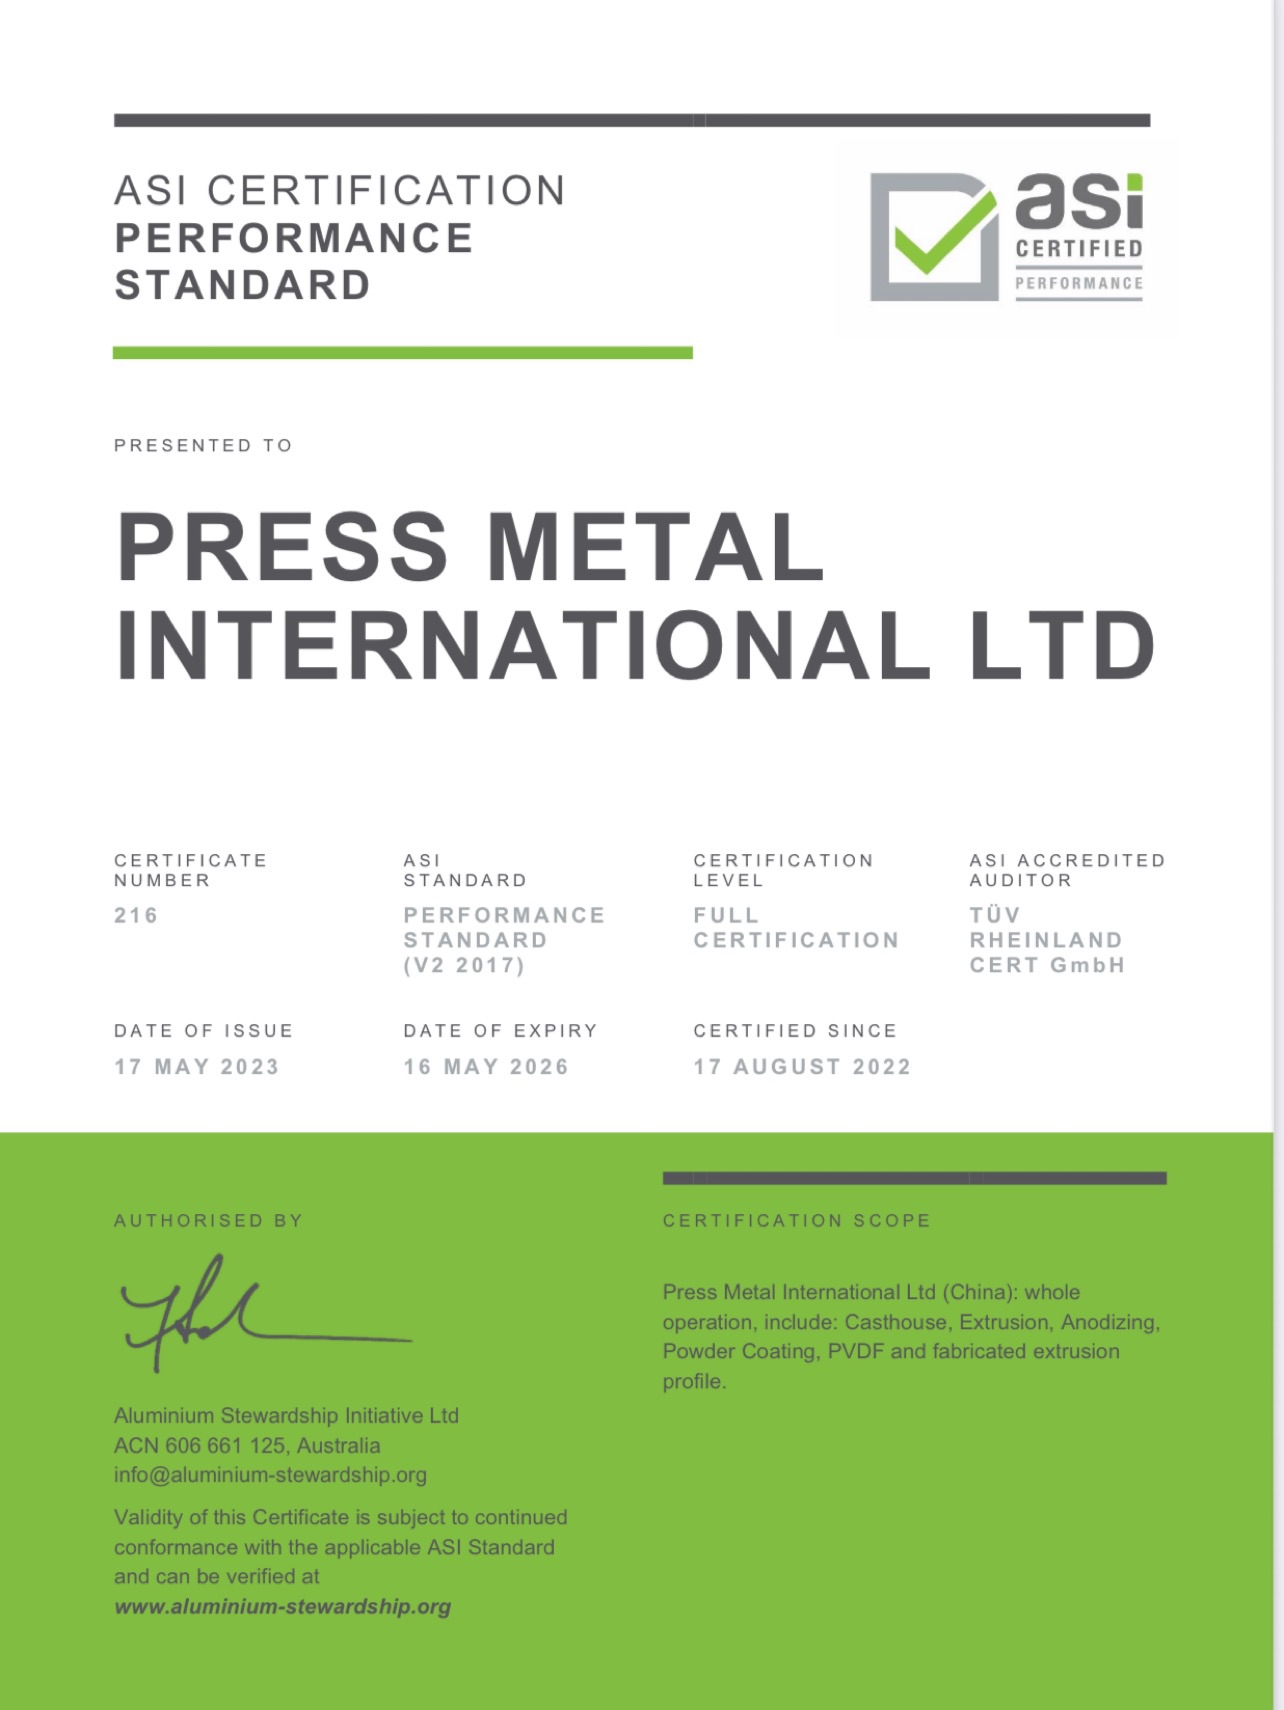 鋁業管理倡議ASI績效標準認證